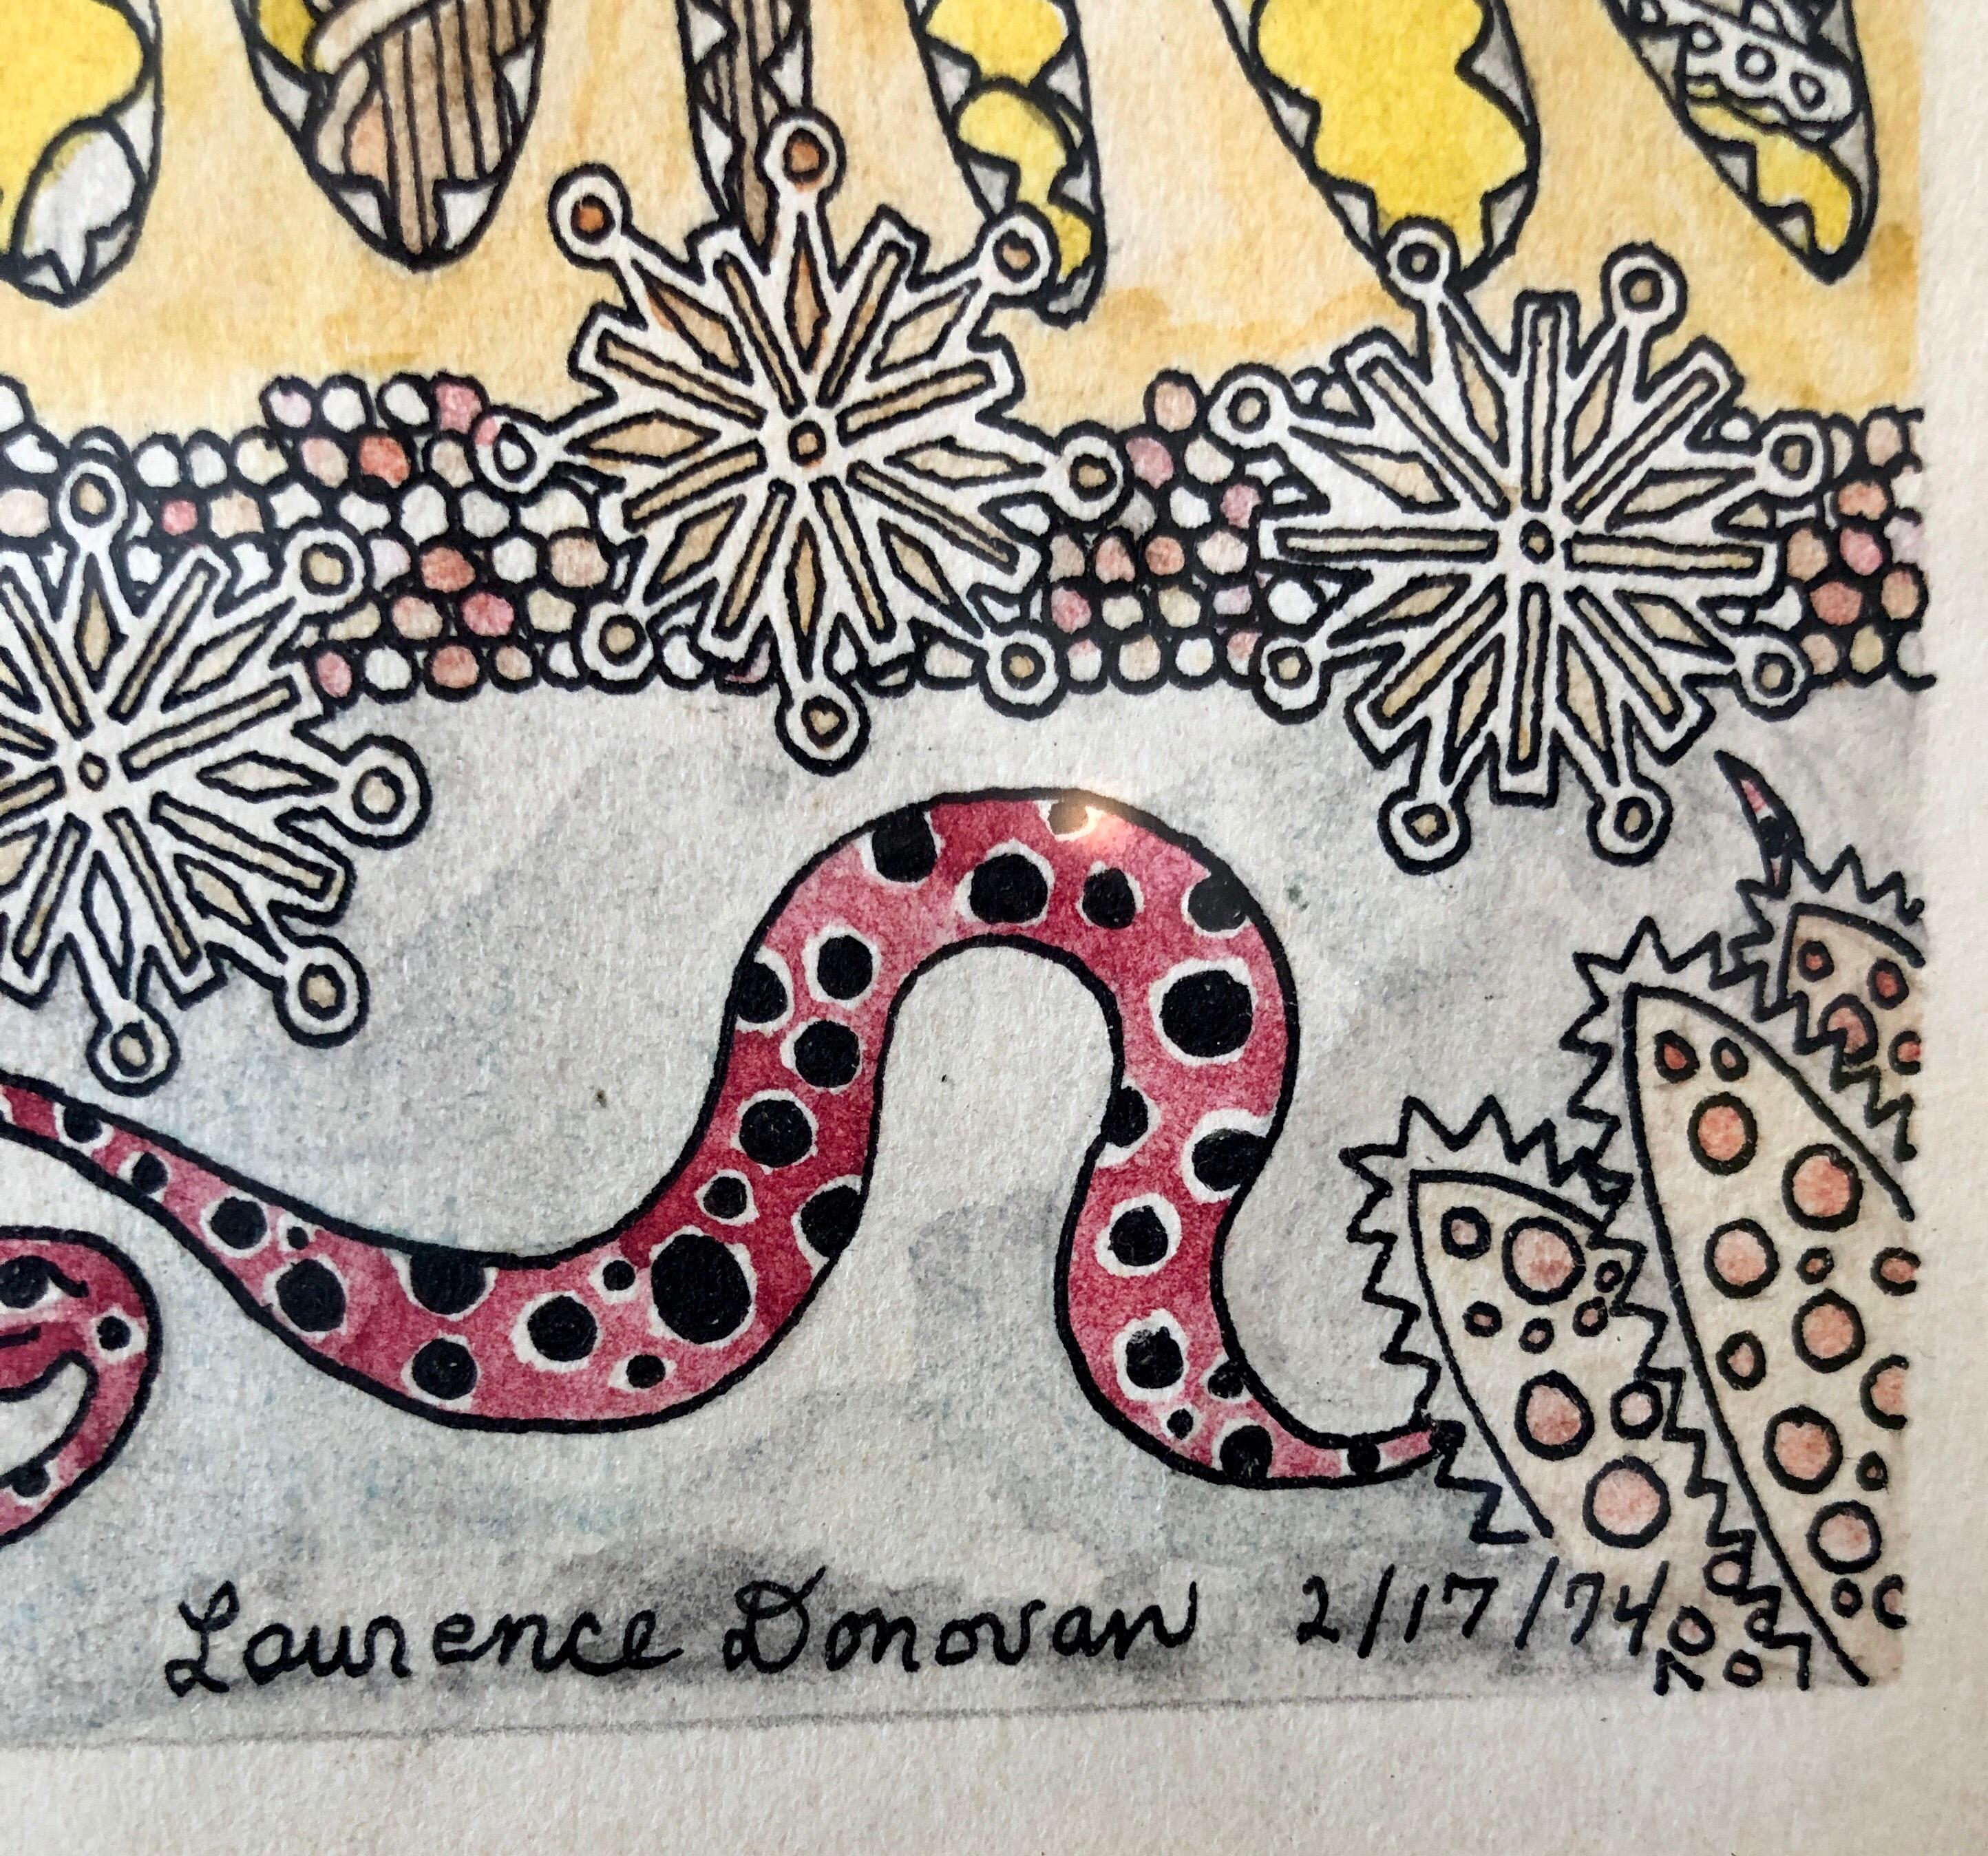 Mod Surrealistische Zeichnung, Aquarellmalerei 1970er Jahre Dschungel Fantasie, Einhorn, Löweide (Surrealismus), Art, von Laurence Donovan